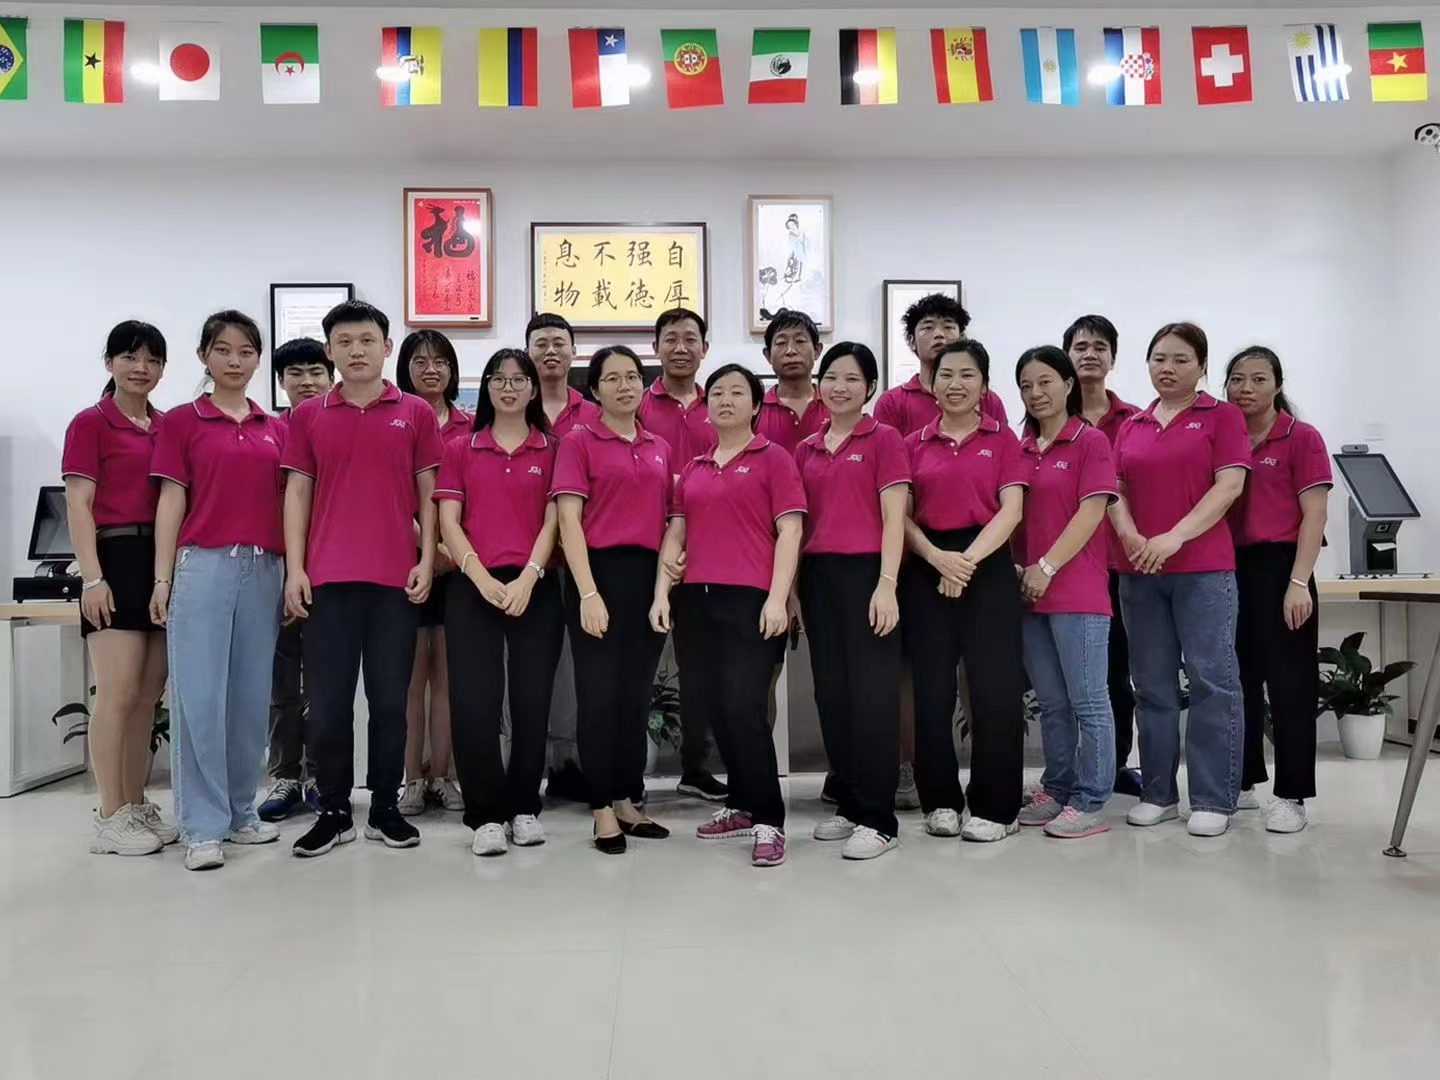 Shenzhen Sui Yi Touch Computer Co., Ltd. organise un match de tennis de table pour les employés